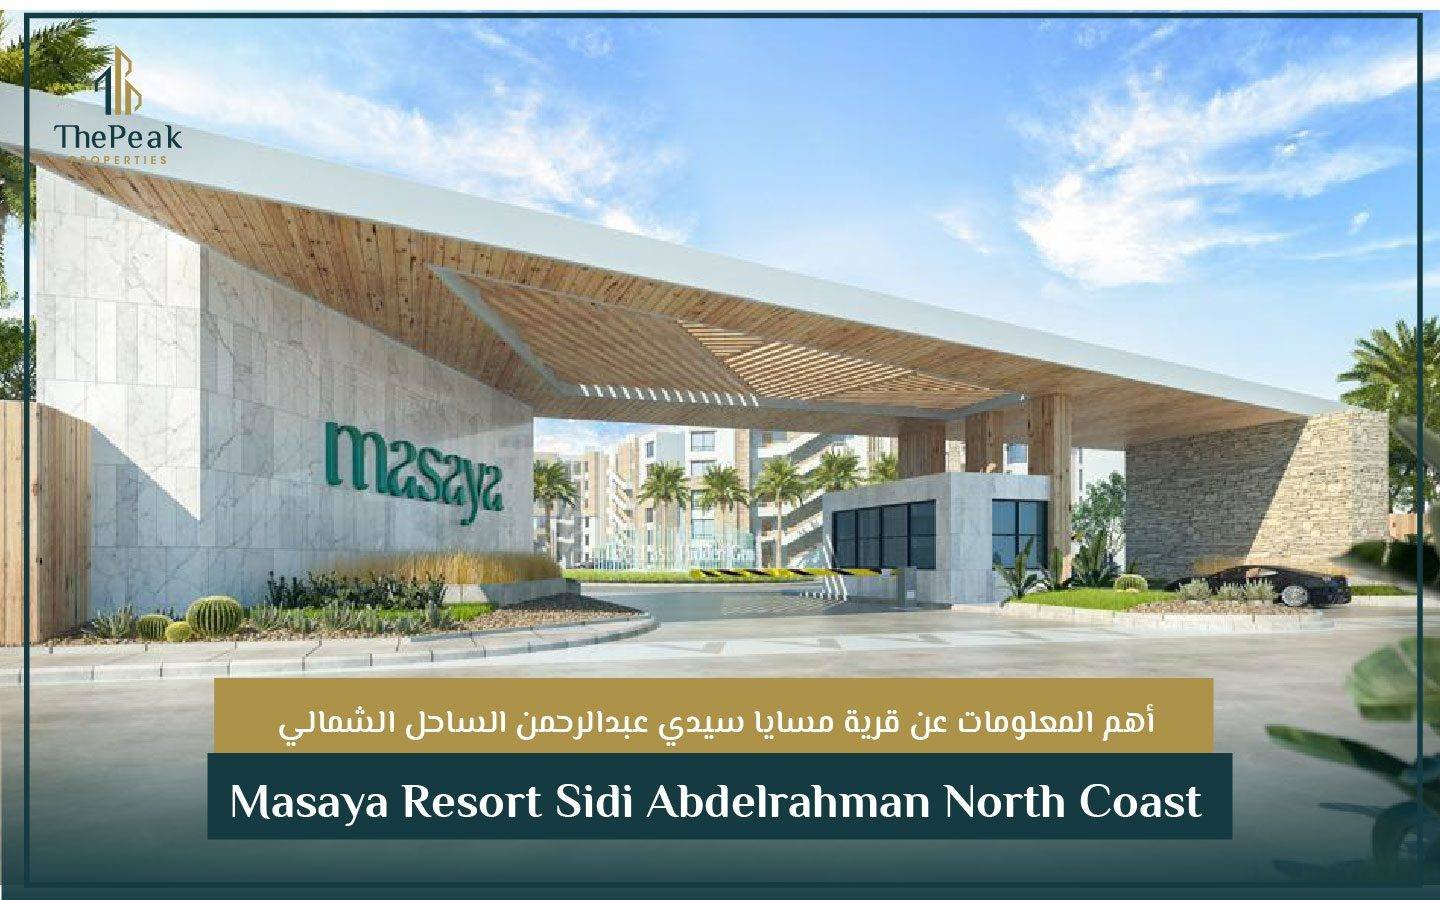 قرية مسايا سيدي عبدالرحمن الساحل الشمالي Masaya Resort Sidi Abdelrahman North Coast